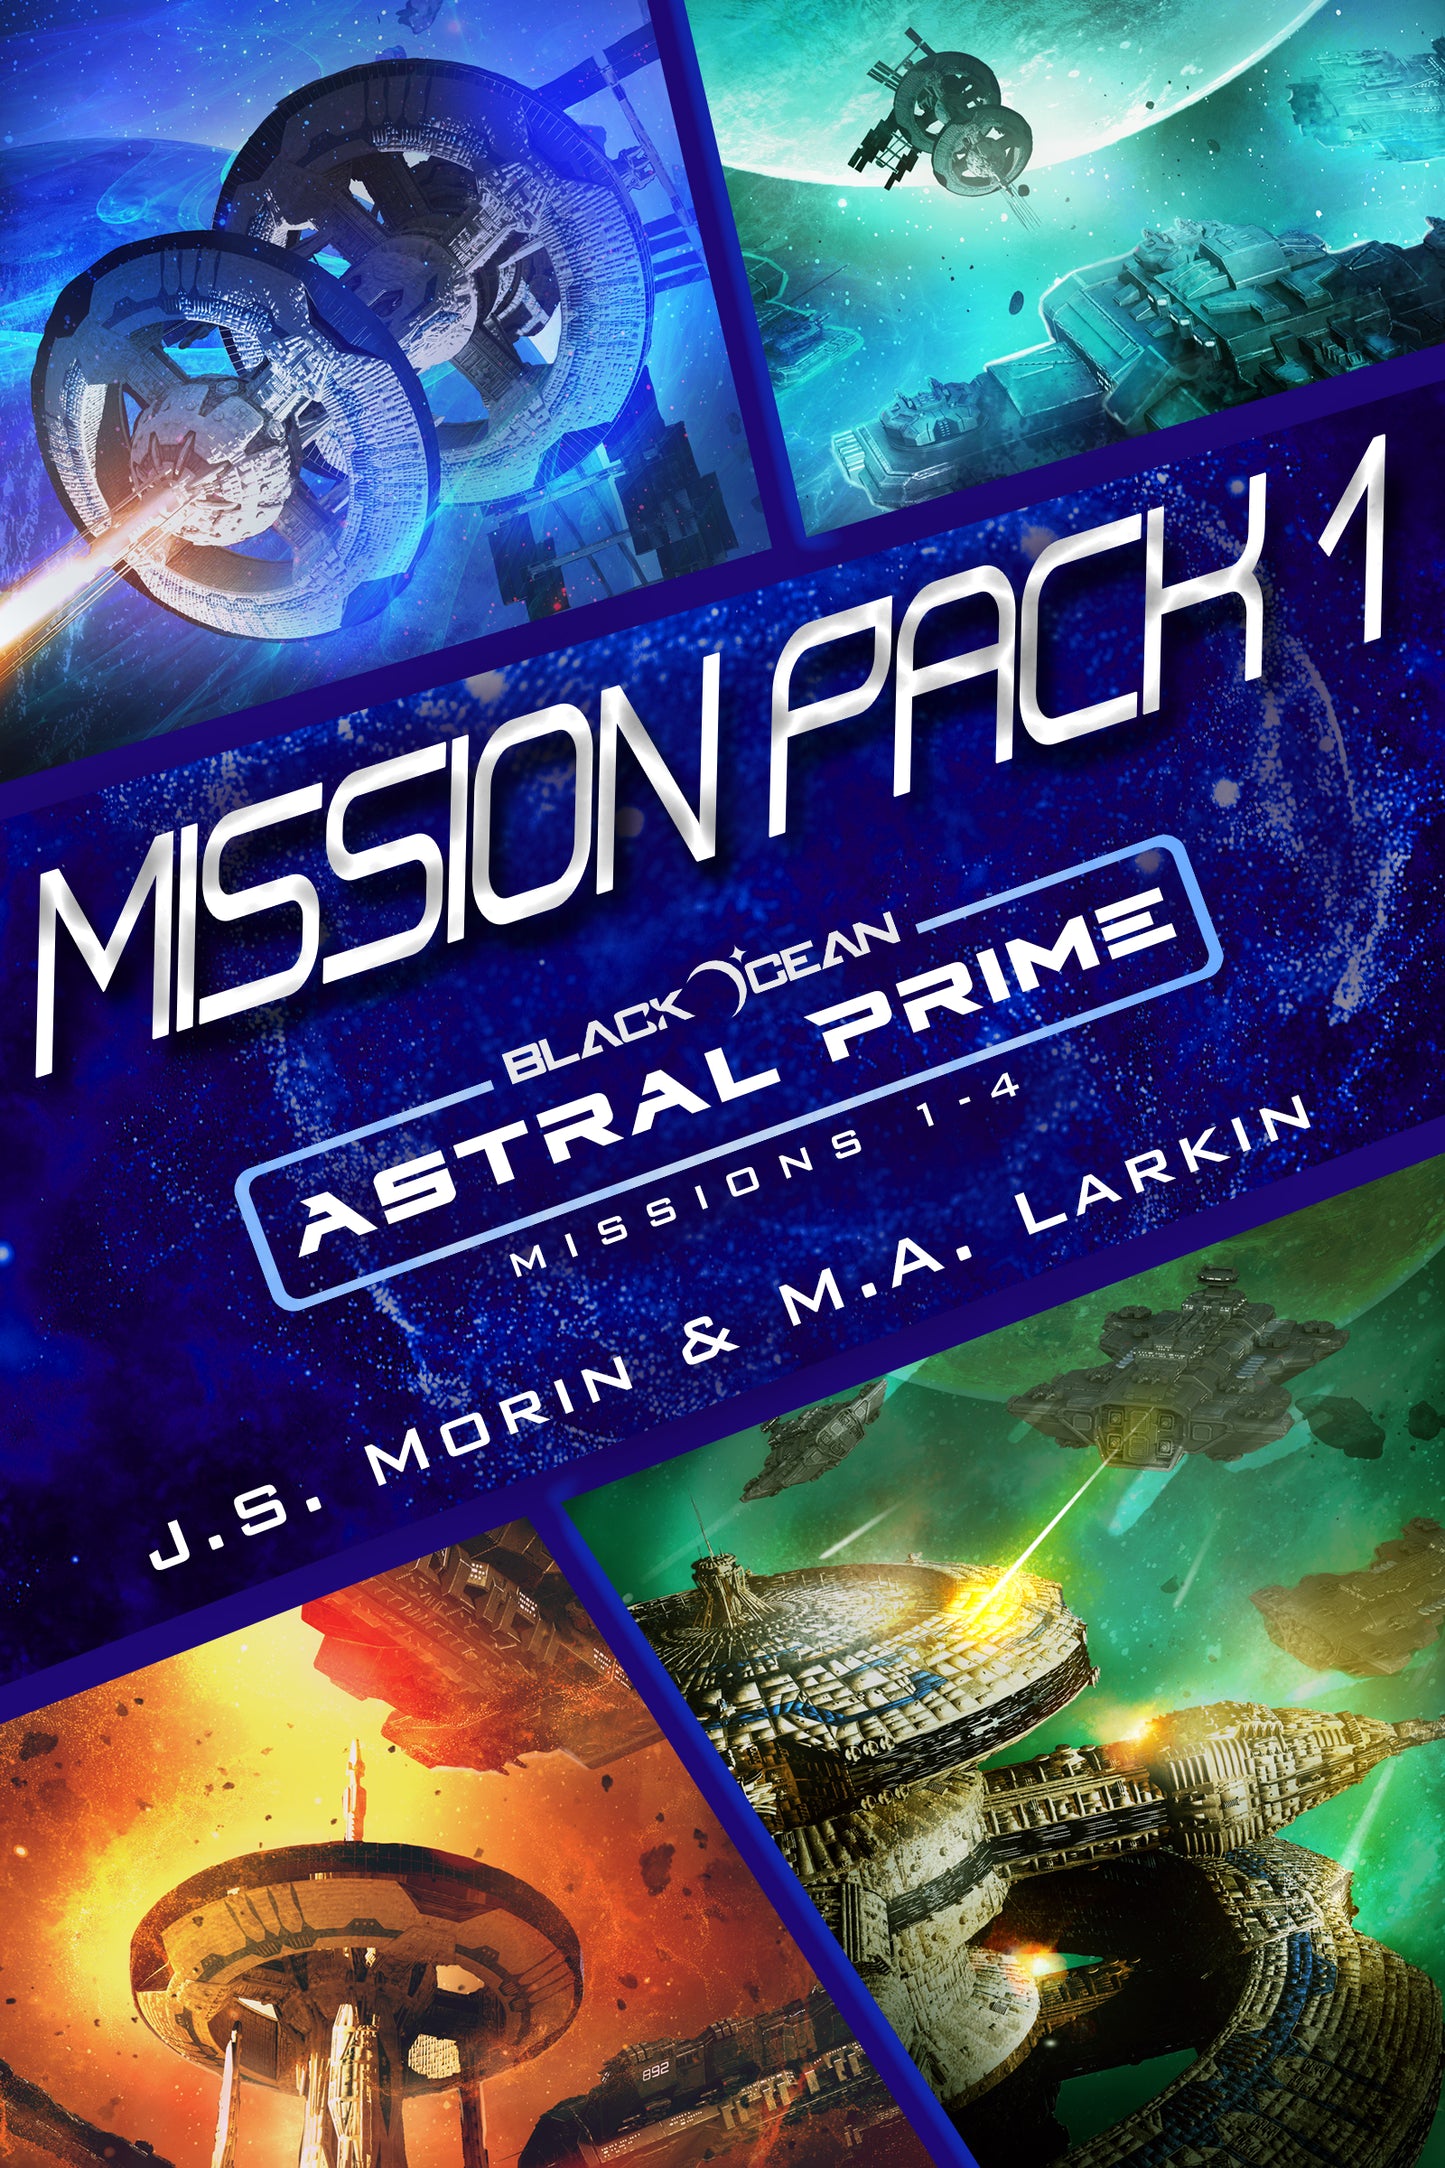 Mission Pack 1, Black Ocean: Astral Prime Missions 1-4